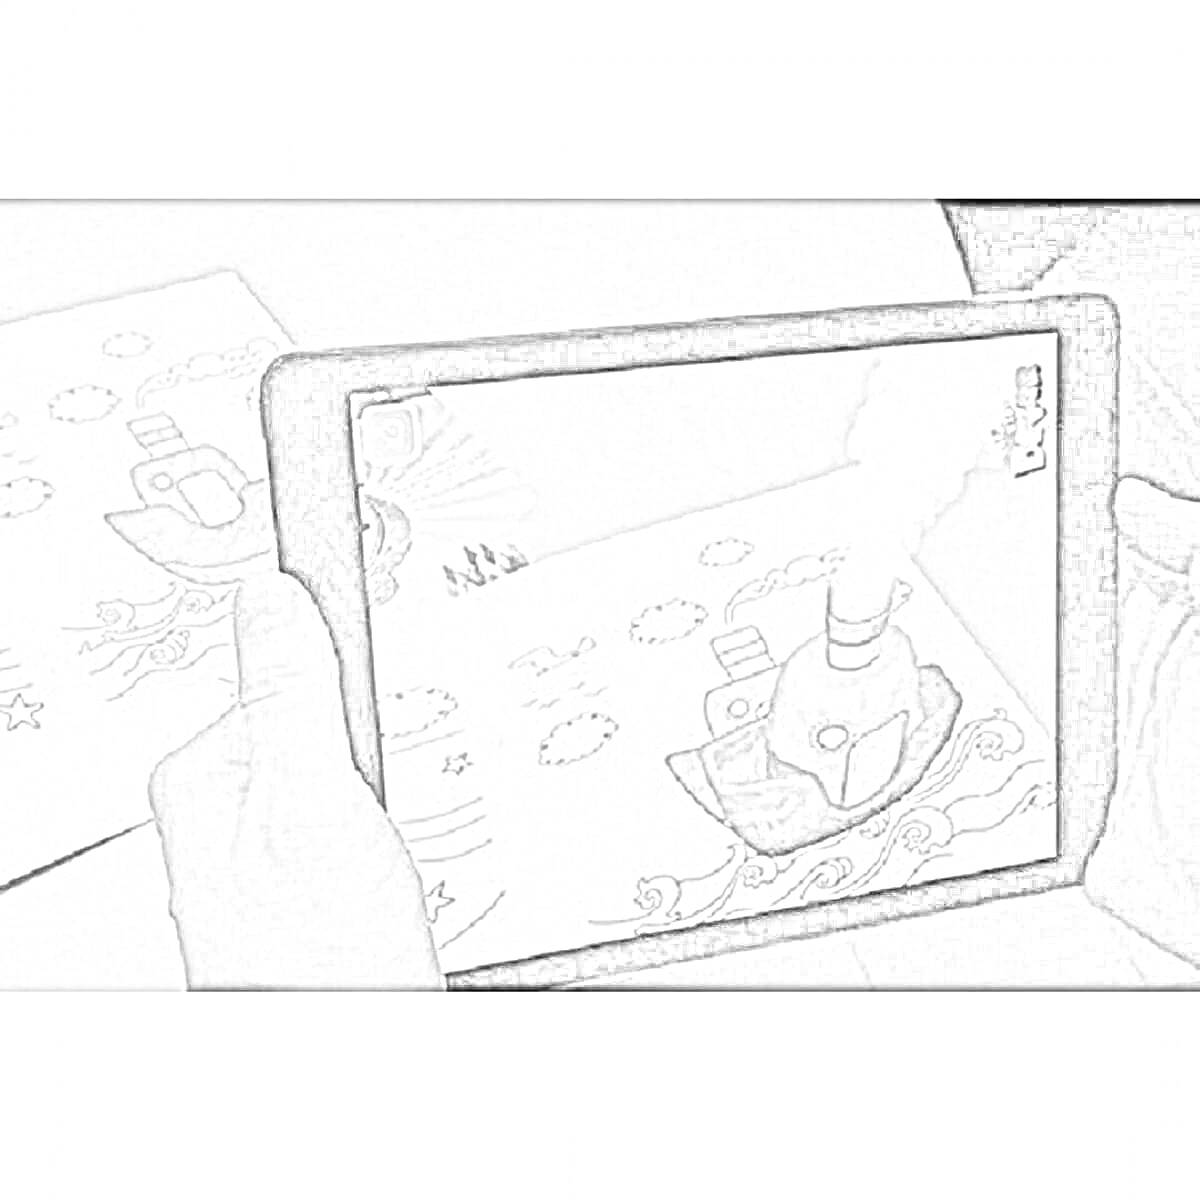 Раскраска Картинка для раскрашивания с кораблем, активируемая в дополненной реальности, отображаемая на планшете или смартфоне